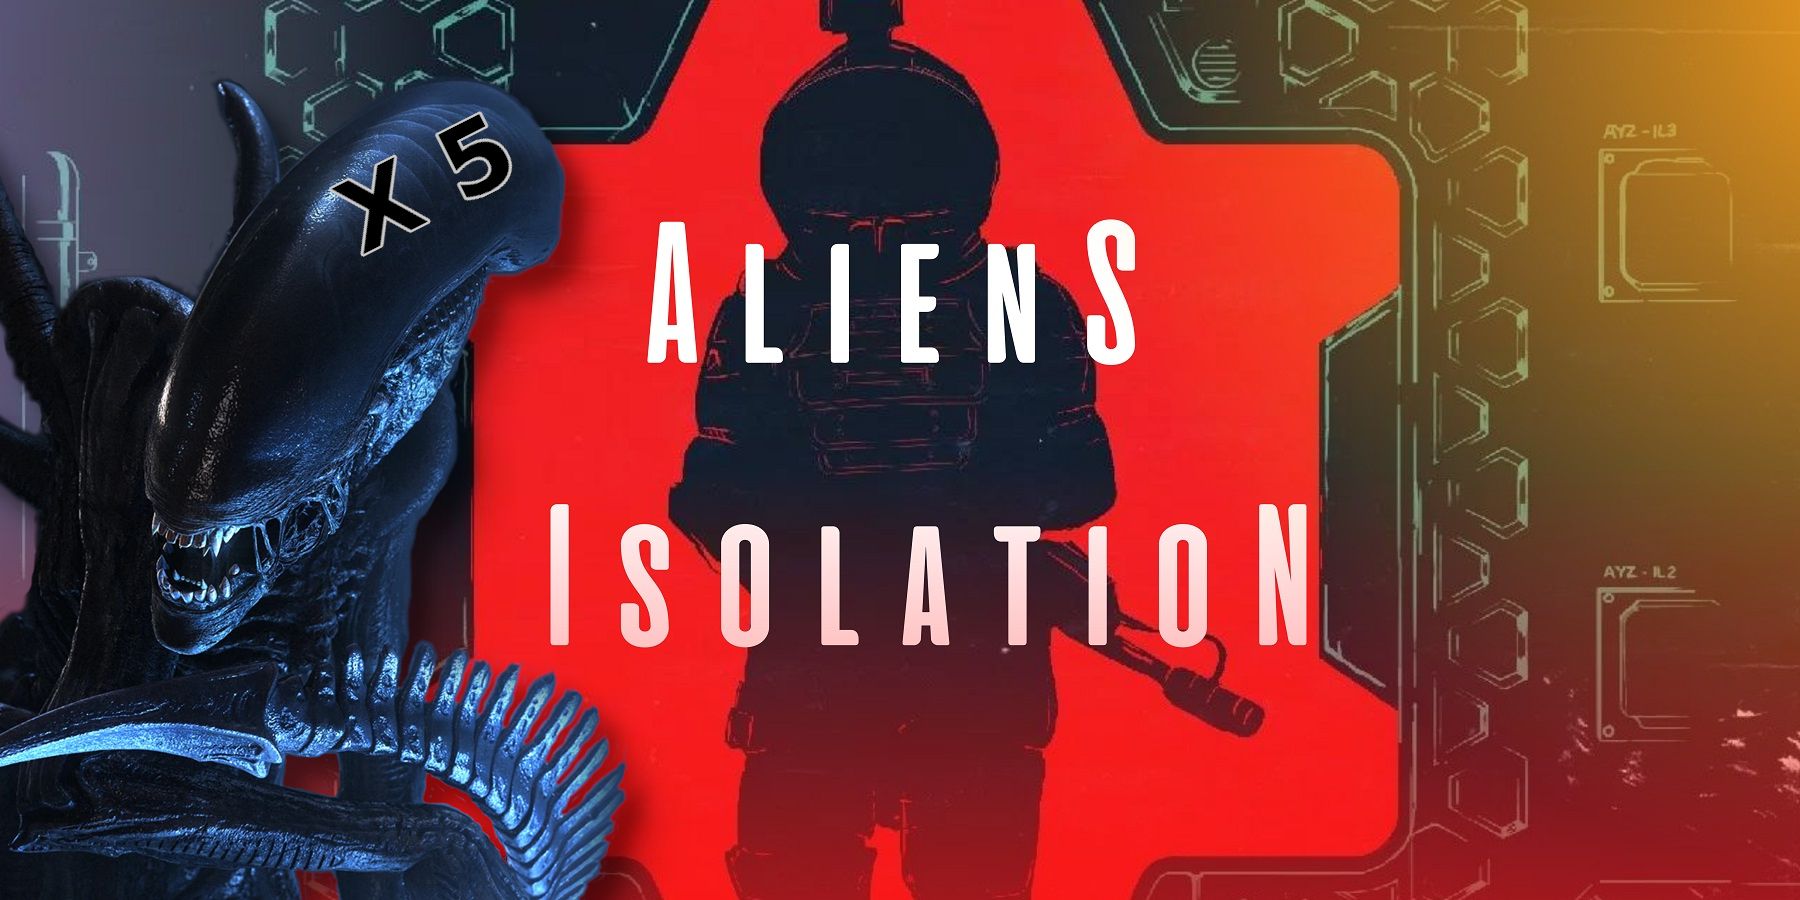 Изображение из мода Alien Isolation, показывающее человека в скафандре на красном фоне.